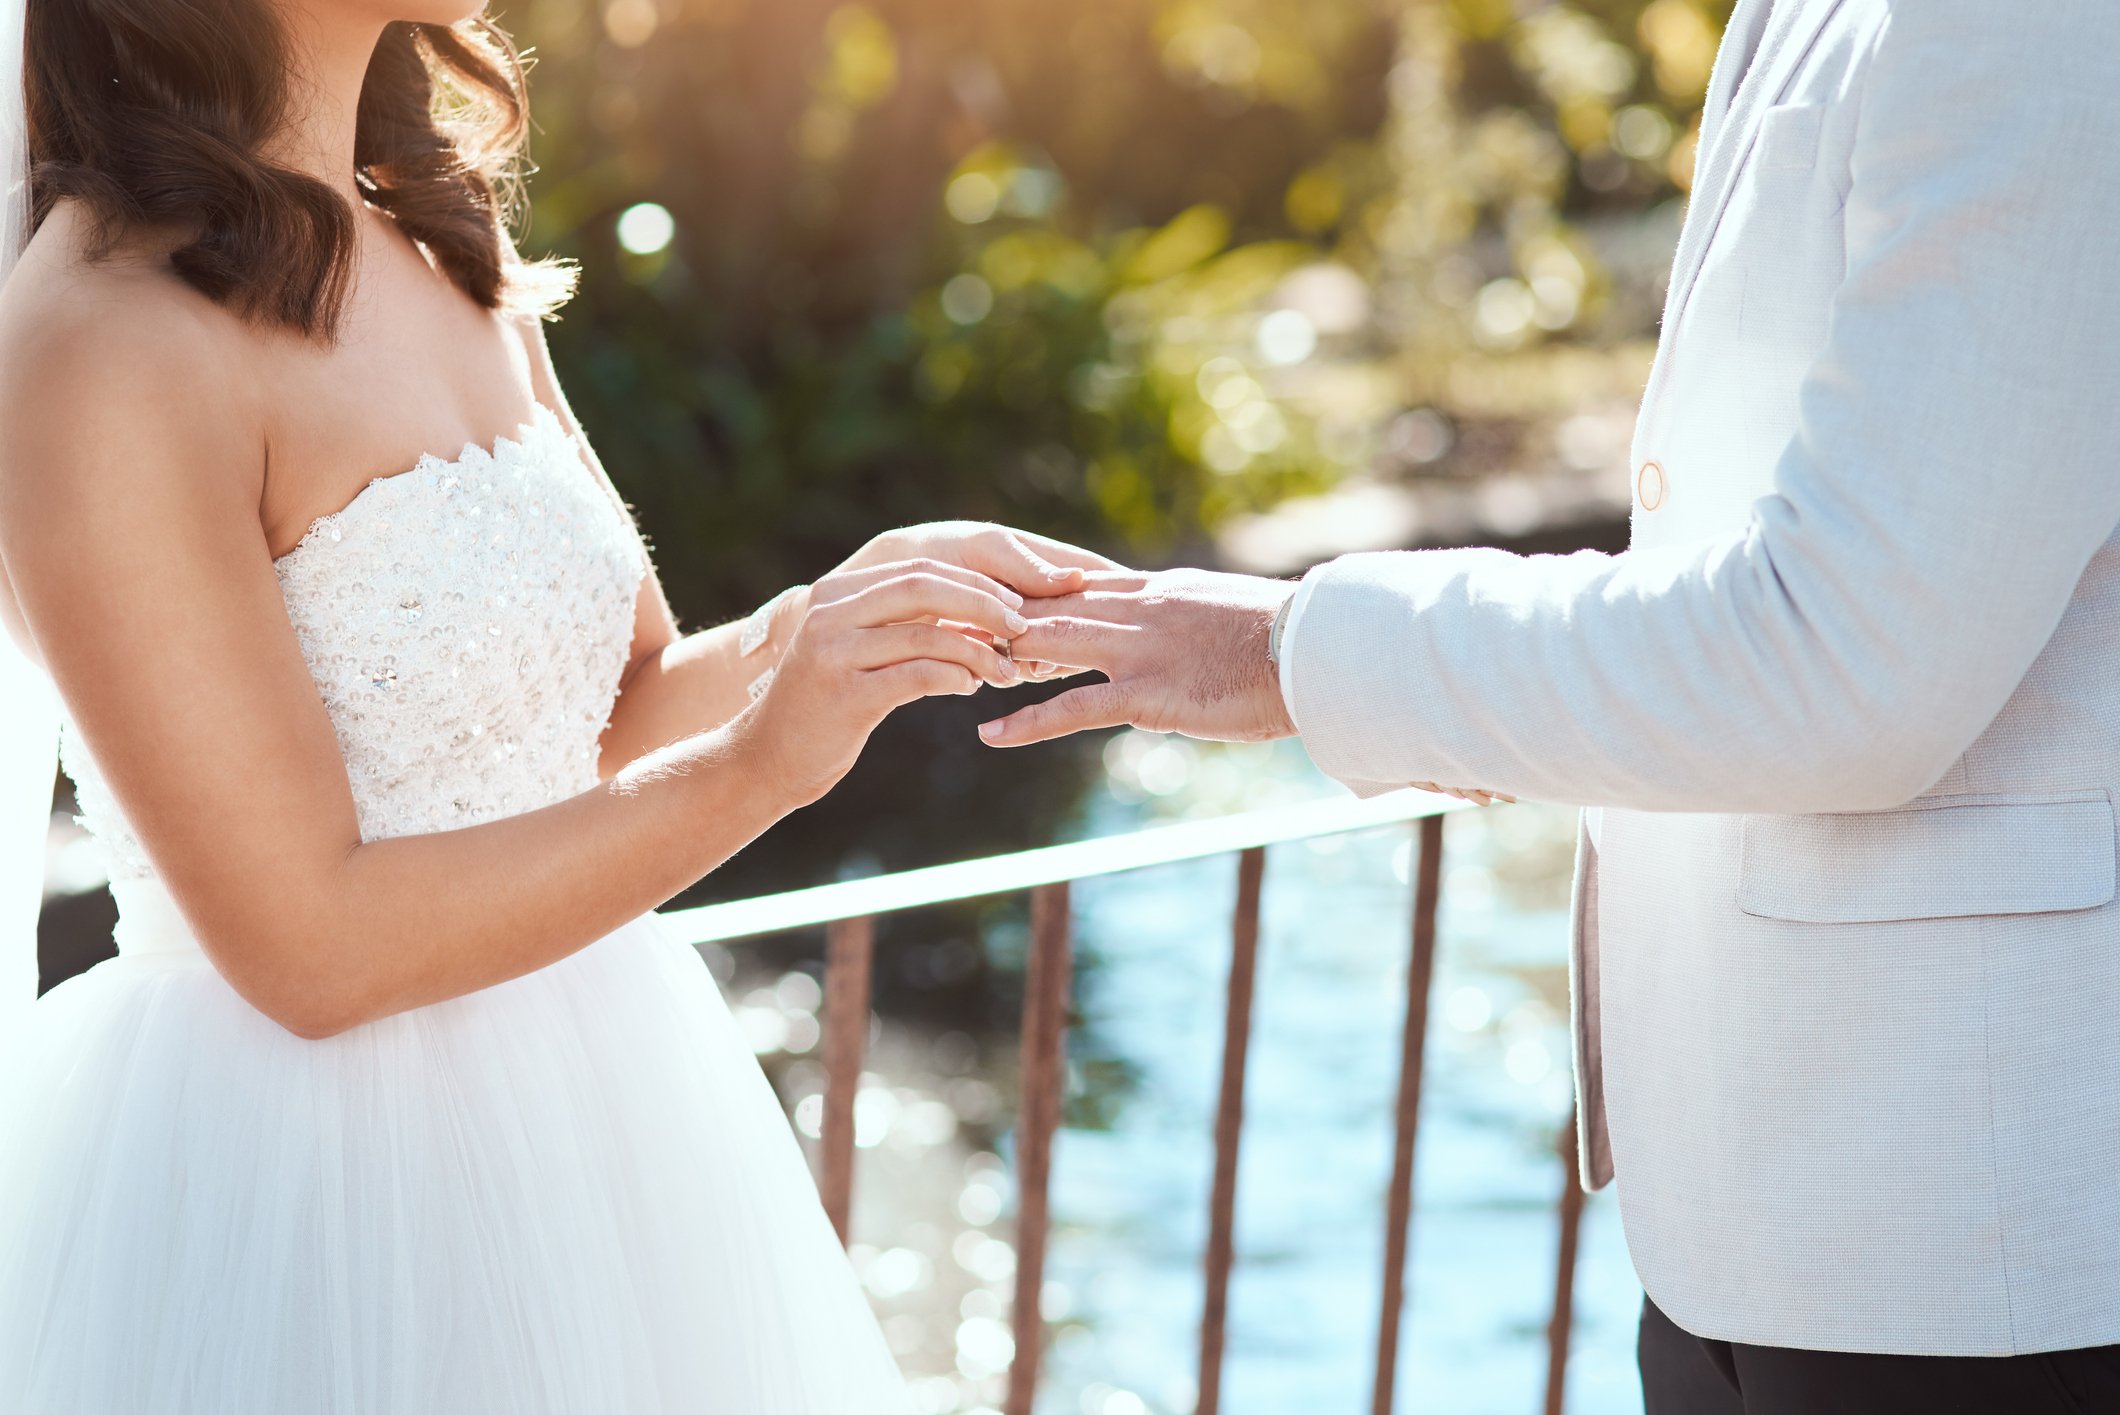 Die Braut zieht einen Ring an den Finger ihres Bräutigams, während sie an ihrem Hochzeitstag im Freien steht | Quelle: Getty Images